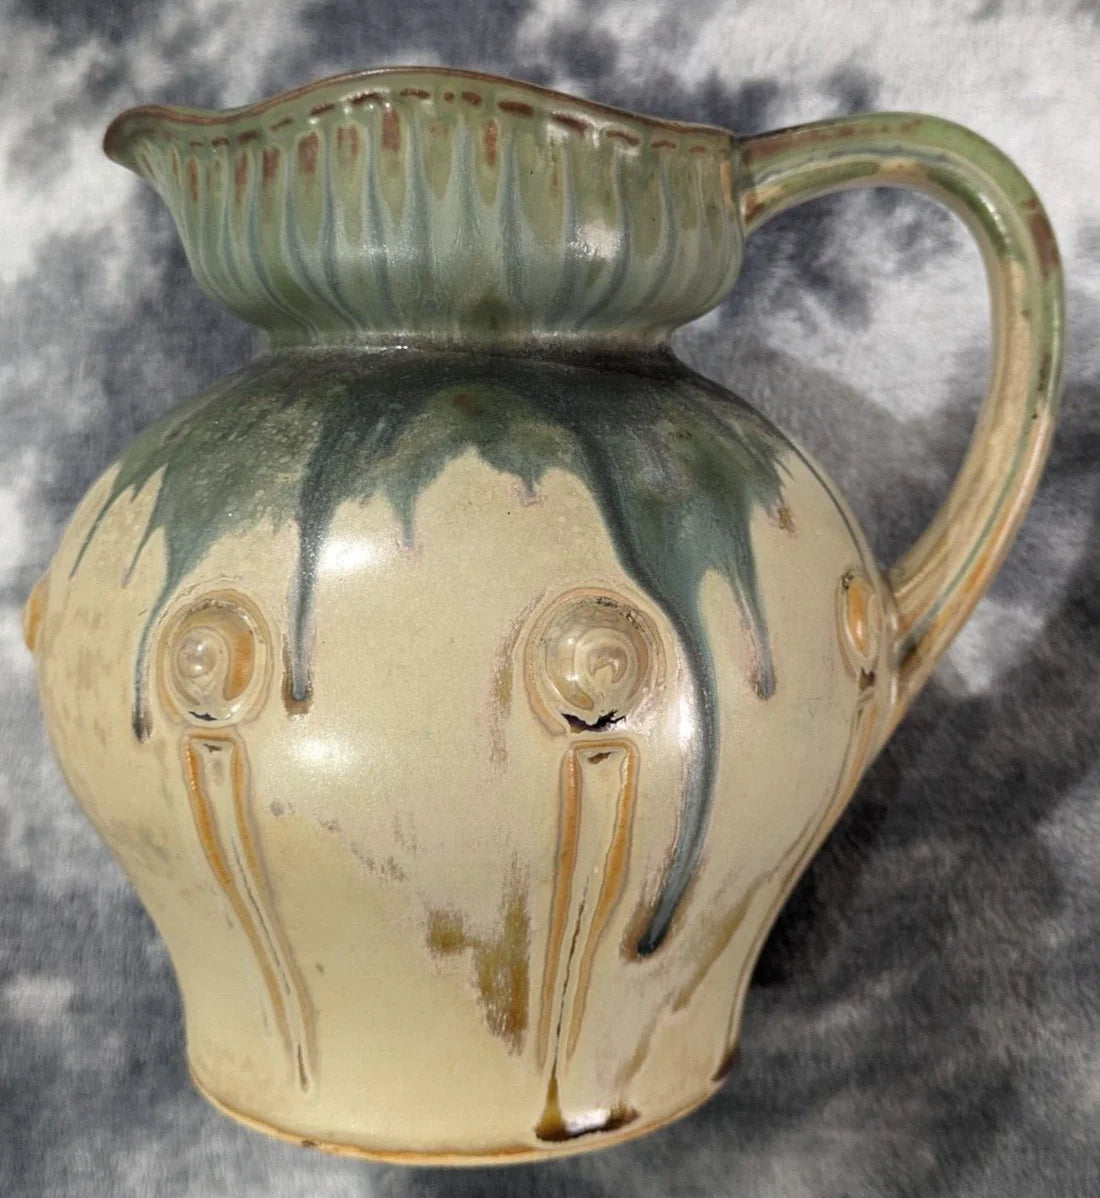 French Vintage Drip Glaze Denbac Arts & Crafts Pitcher Jug Ceramic Pottery